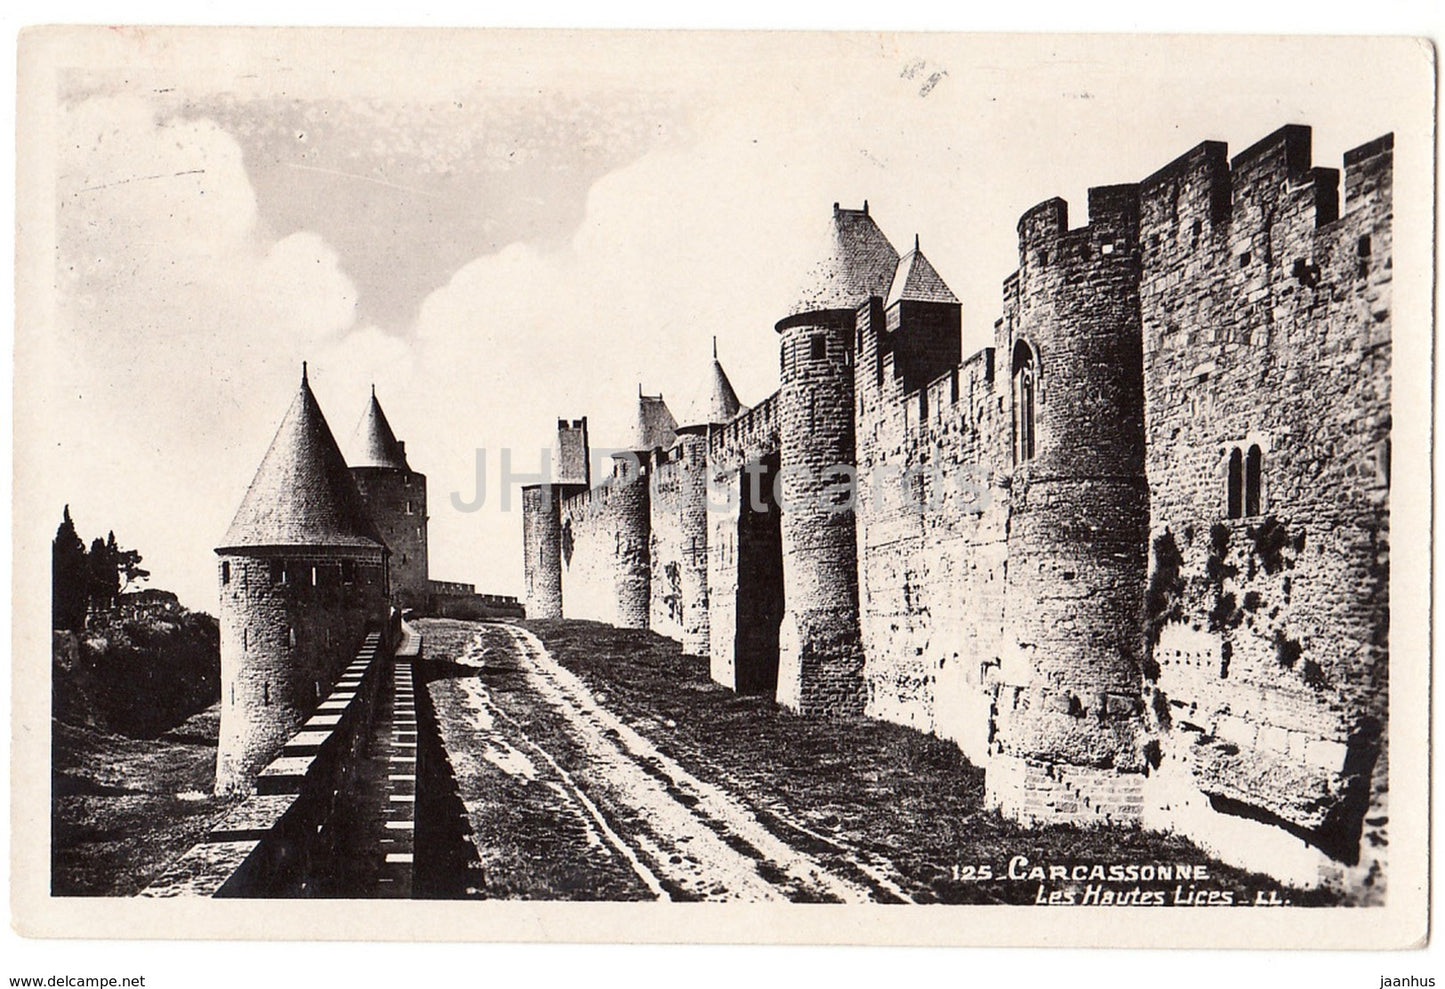 Carcassonne - Les Hautes Lices - 125 - France - unused - JH Postcards